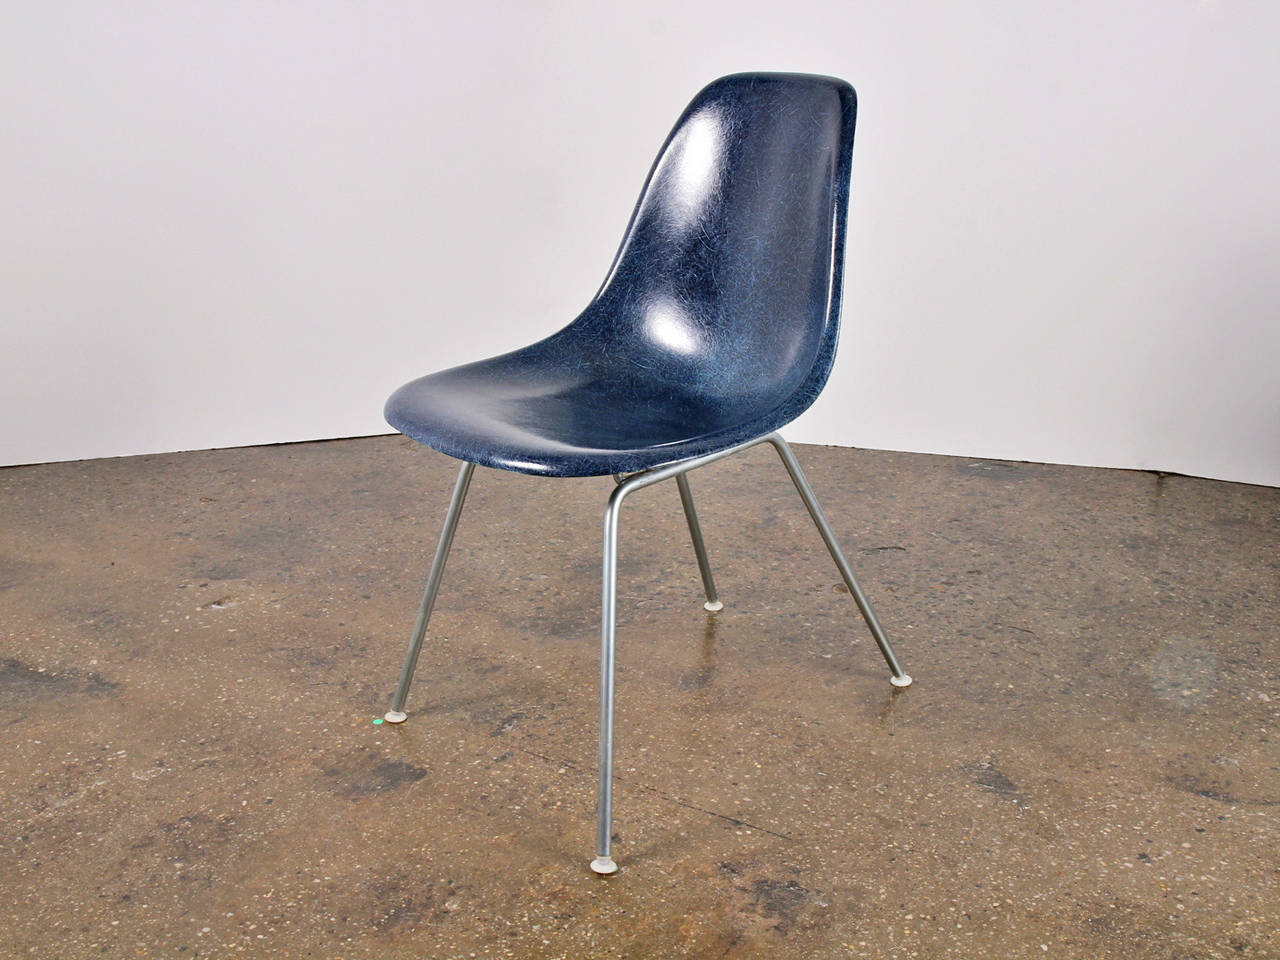 Chaises originales en fibre de verre moulée des années 1960 en bleu marine, conçues par Charles et Ray Eames pour Herman Miller. Les coquilles brillantes sont en état d'origine, chacune ayant une texture filiforme distincte.  Montré ici monté sur